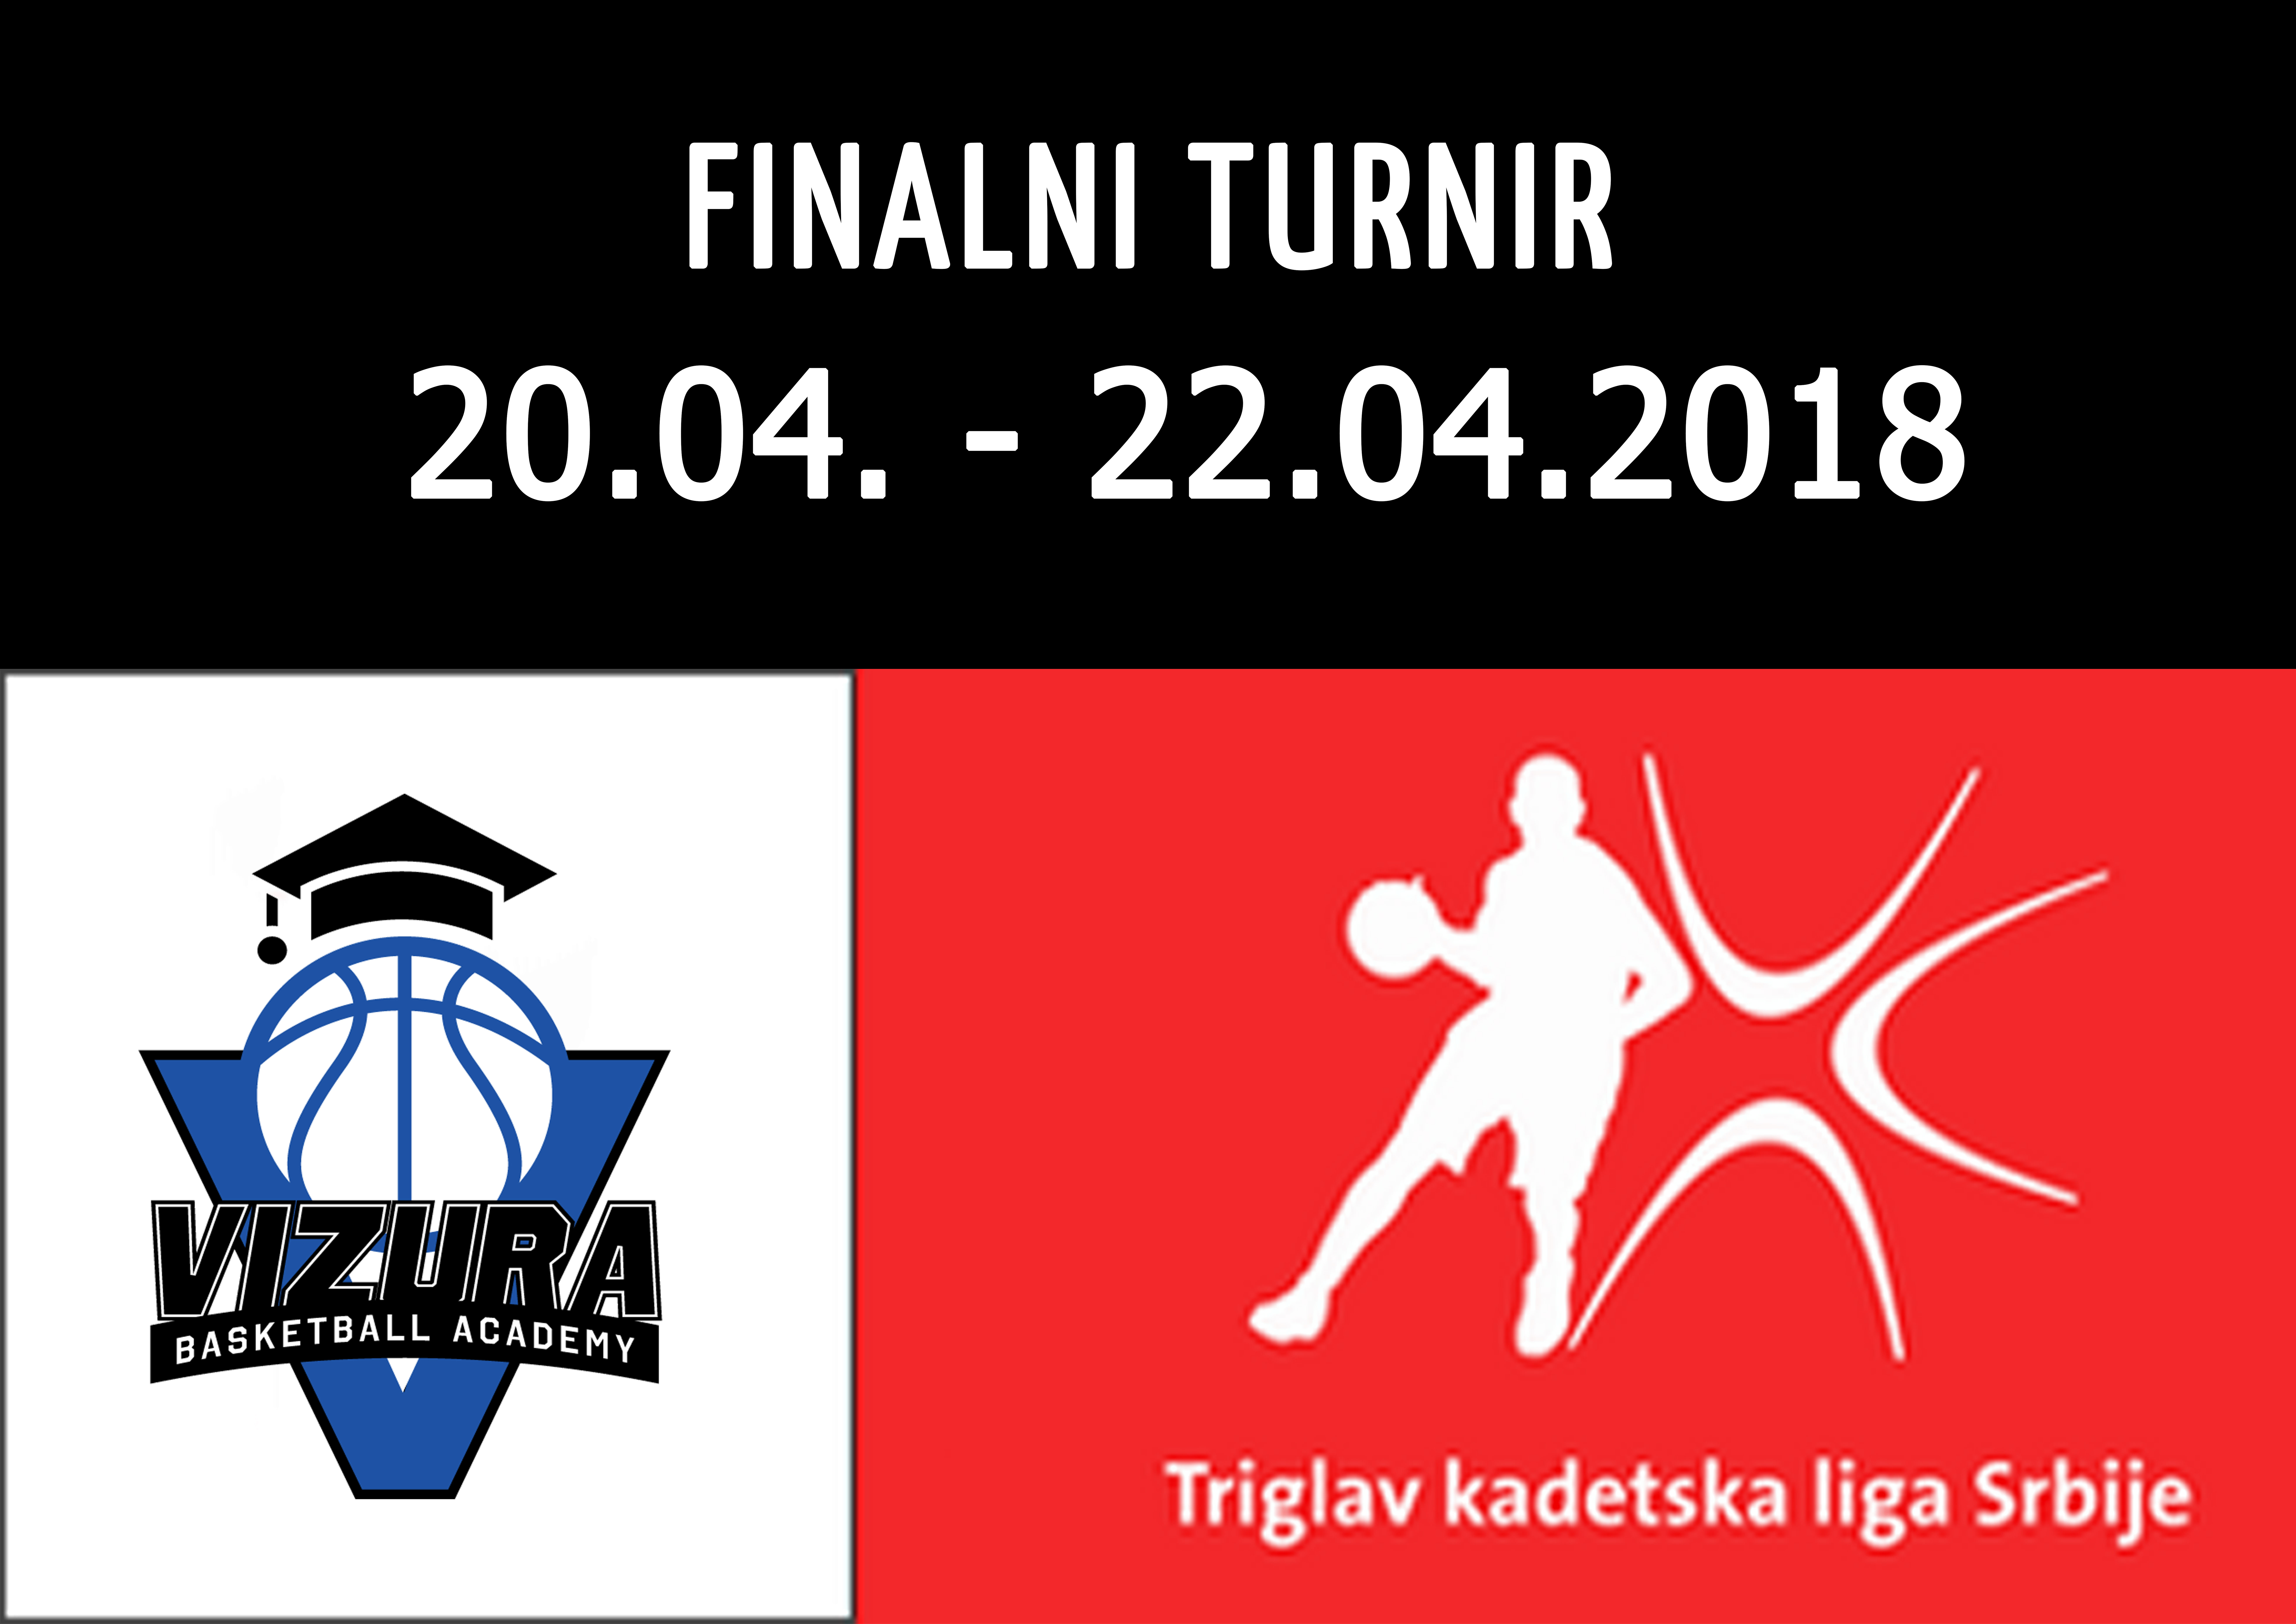 the final tournament of the triglav cadet league of serbia